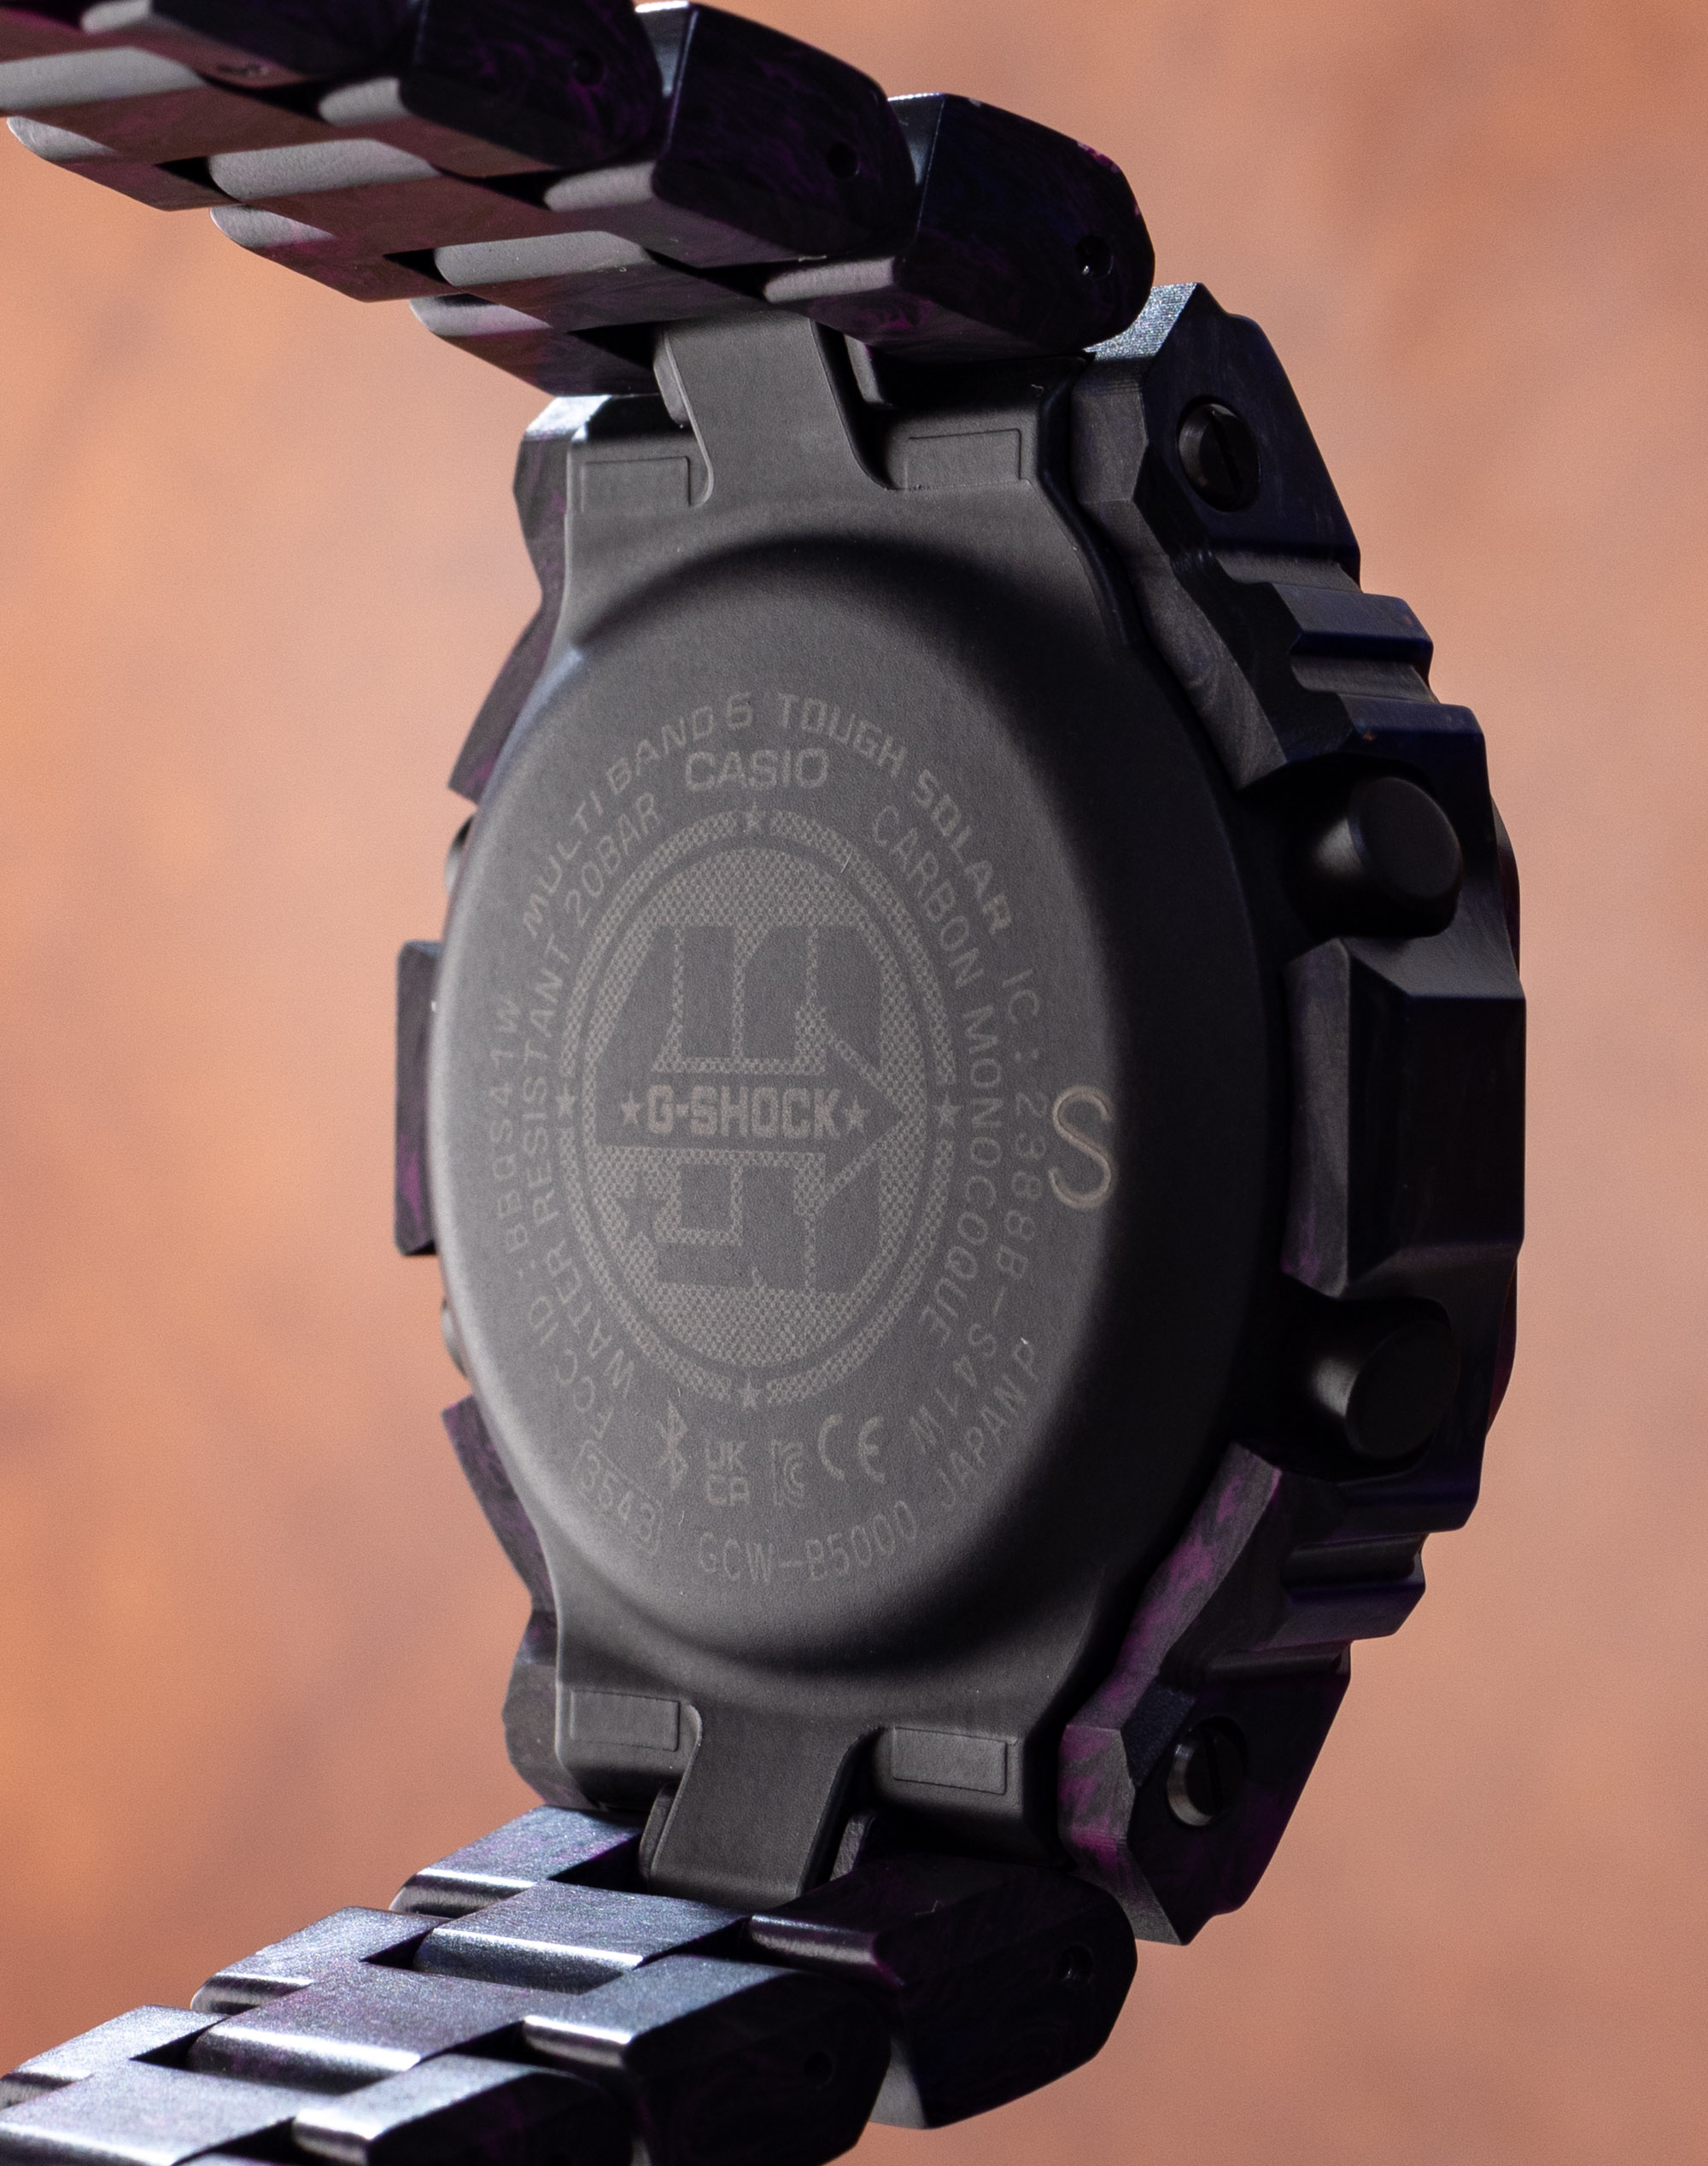 Обзор часов Casio G-Shock GCWB5000 Carbon Edition которые весят всего 65 грамм!